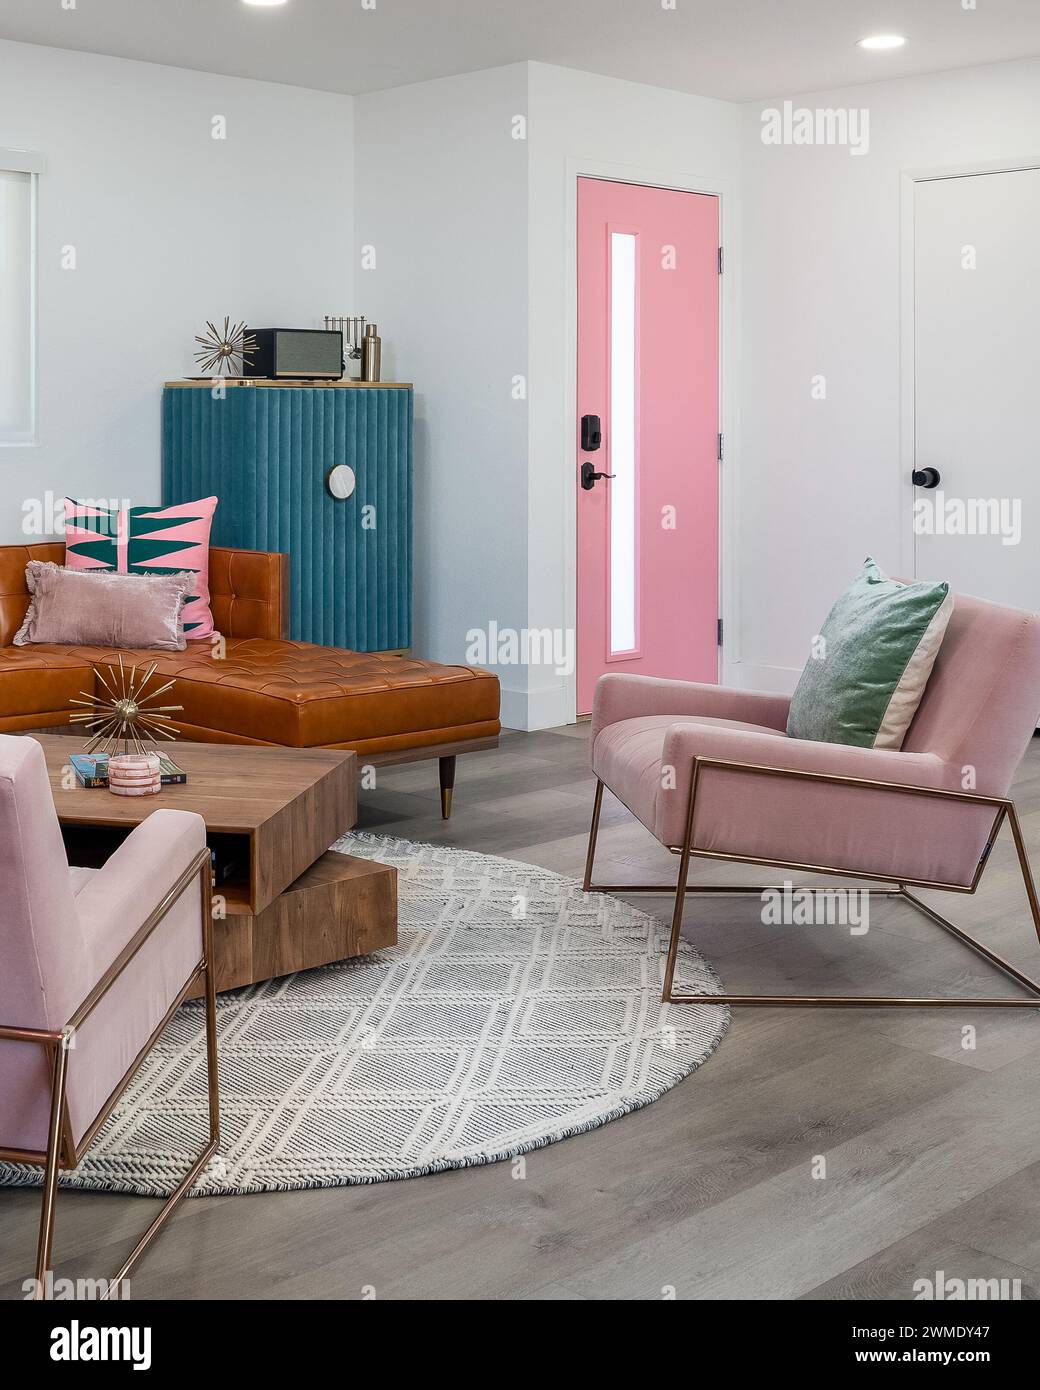 Ce salon moderne tendance du milieu du siècle est doté de chaises roses, d''une porte rose et d''un canapé en cuir. Banque D'Images